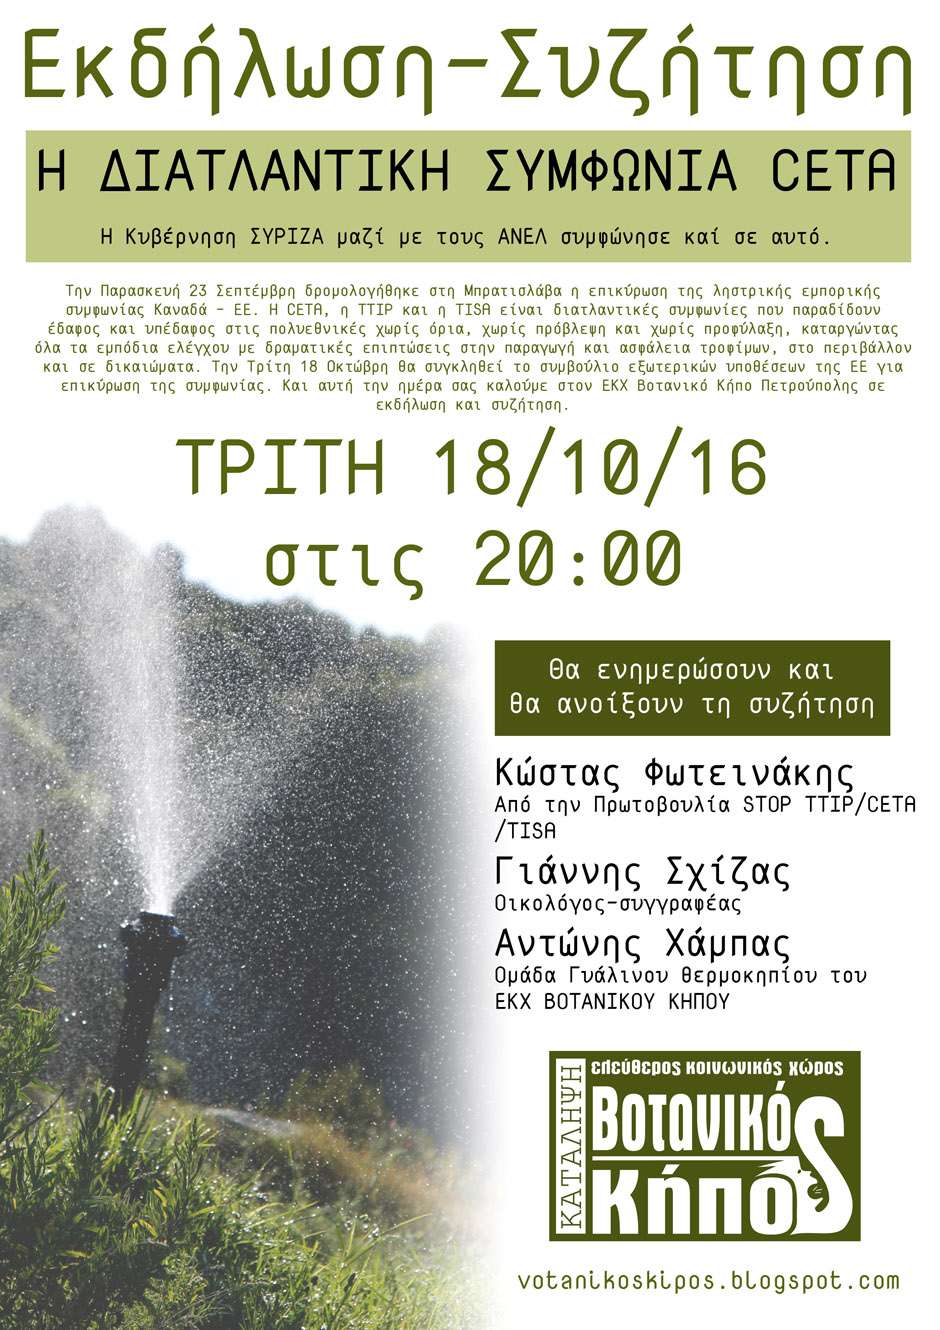 Αθήνα: Εκδήλωση/συζήτηση “Η διατλαντική συμφωνία CETA” [Τρίτη 18/10, 20:00]